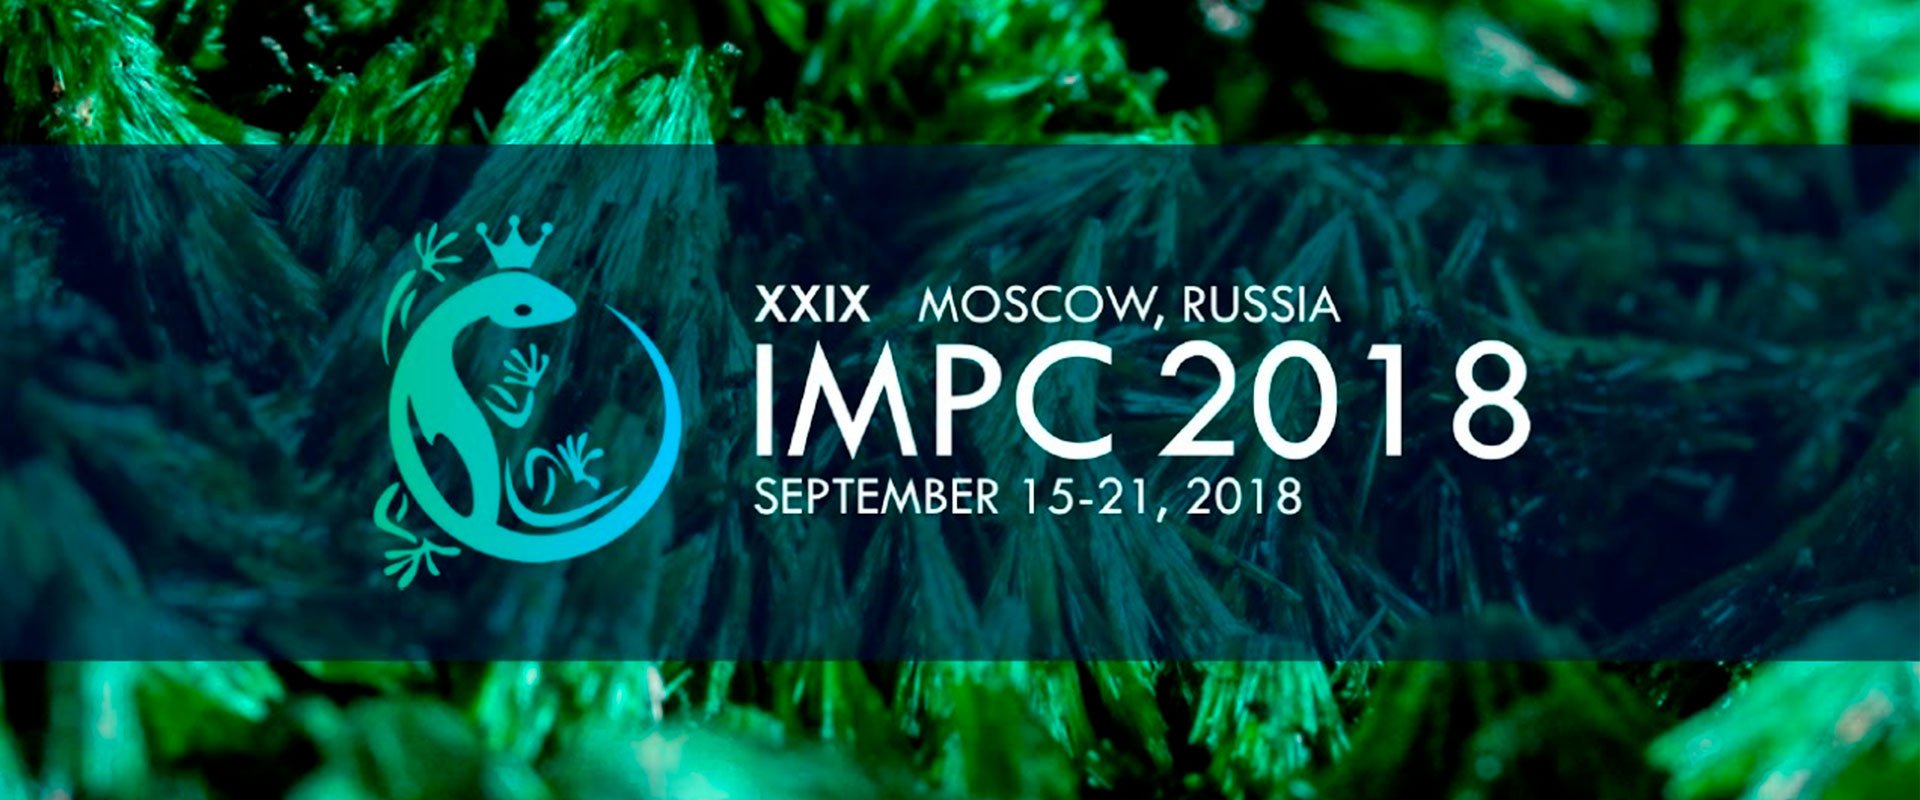 Международный конгресс IMPC 2018